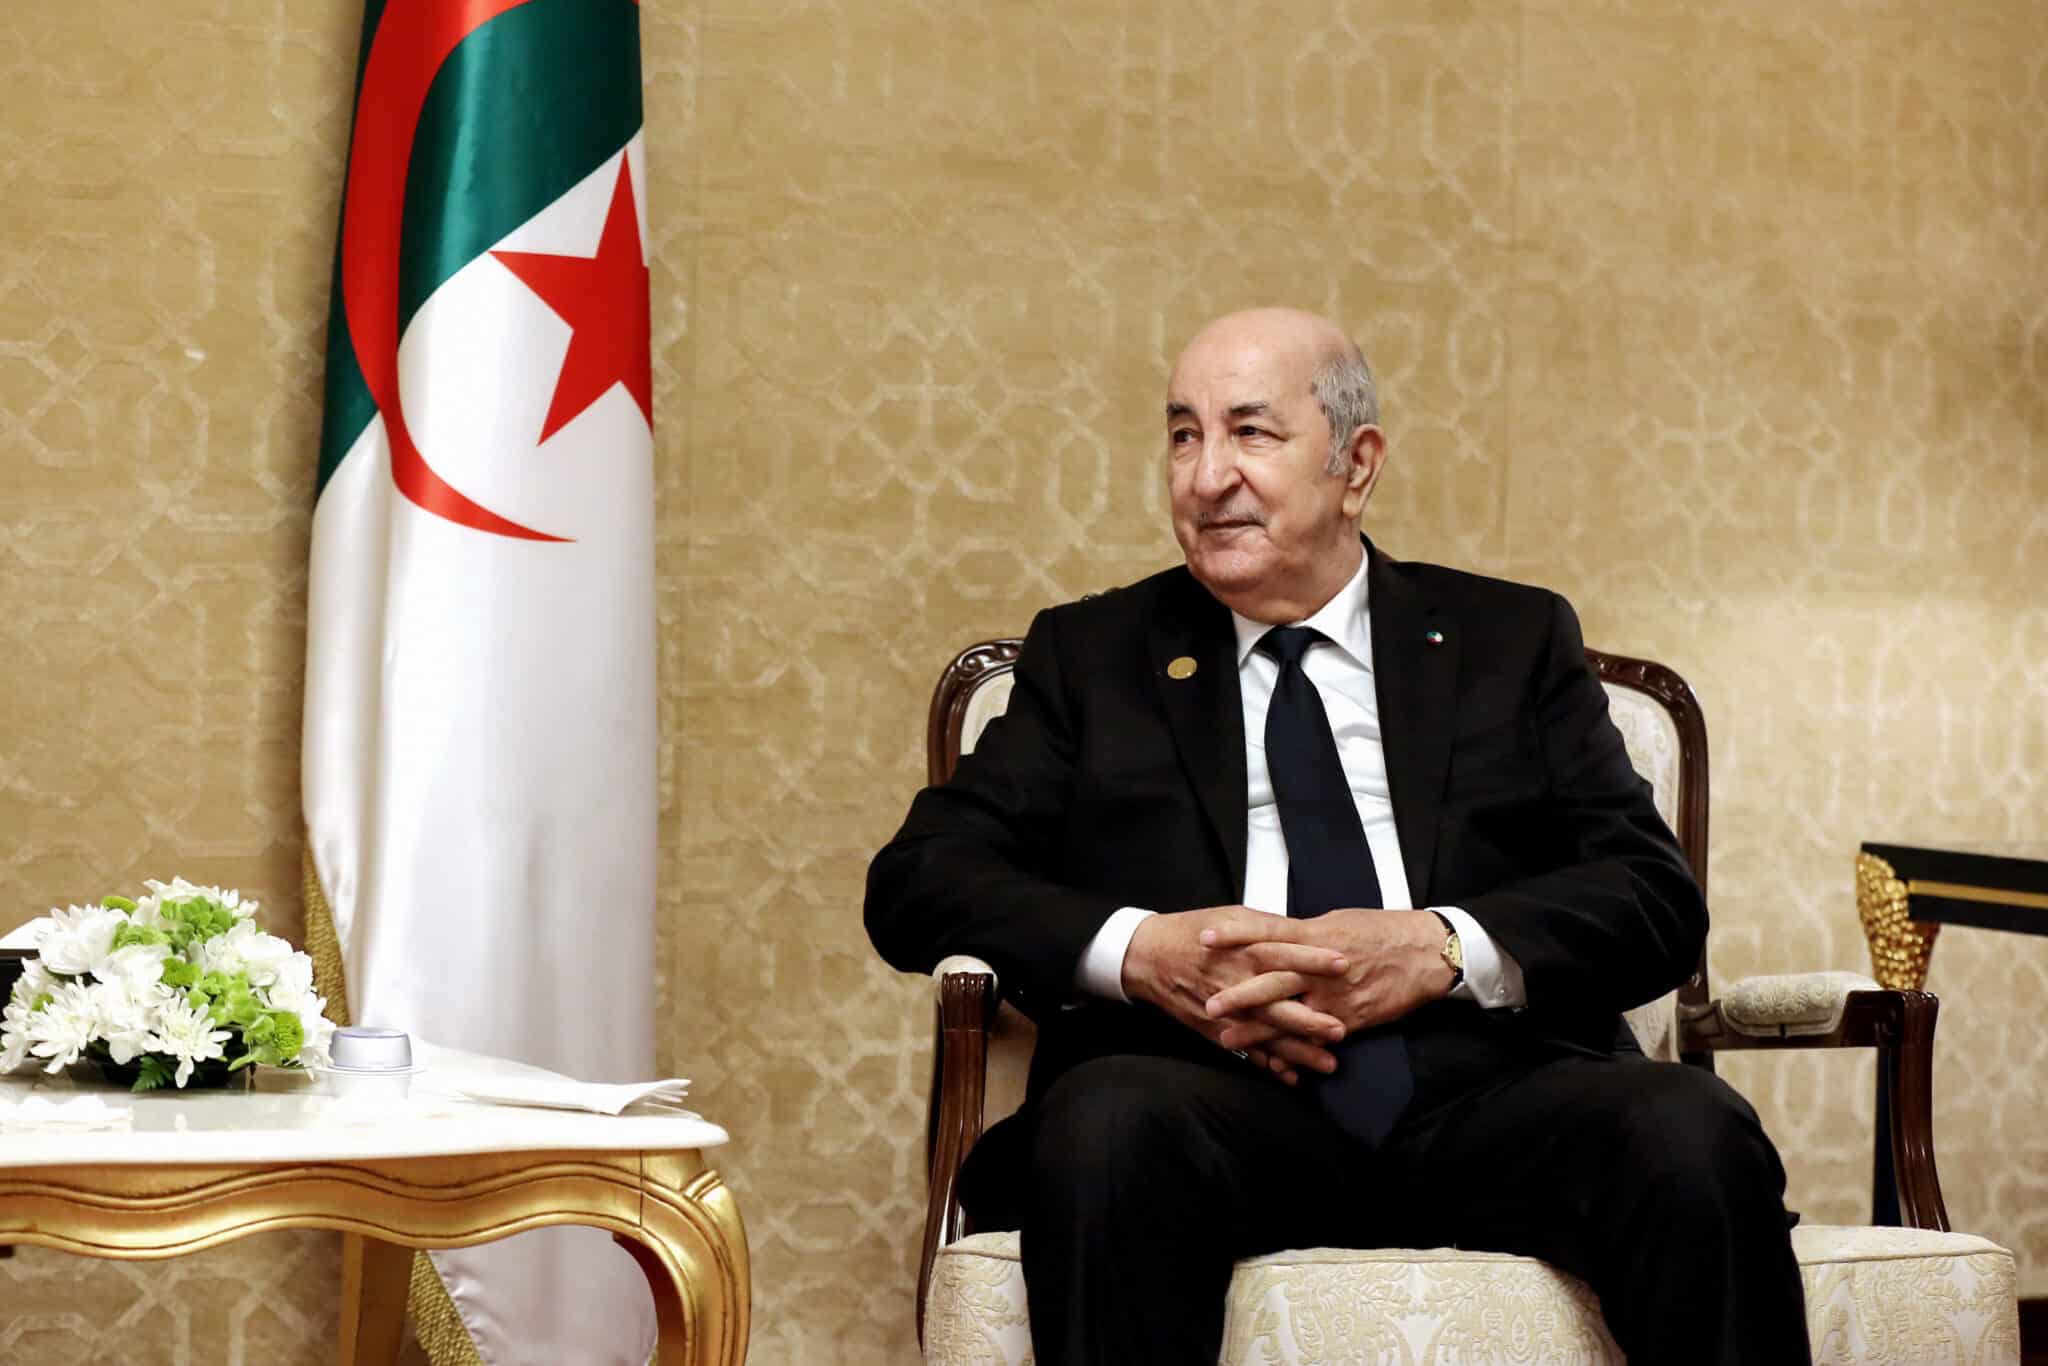 El presidente de Argelia acusa a Sánchez de cometer "un acto hostil" y presume de "excelentes relaciones" con Felipe VI